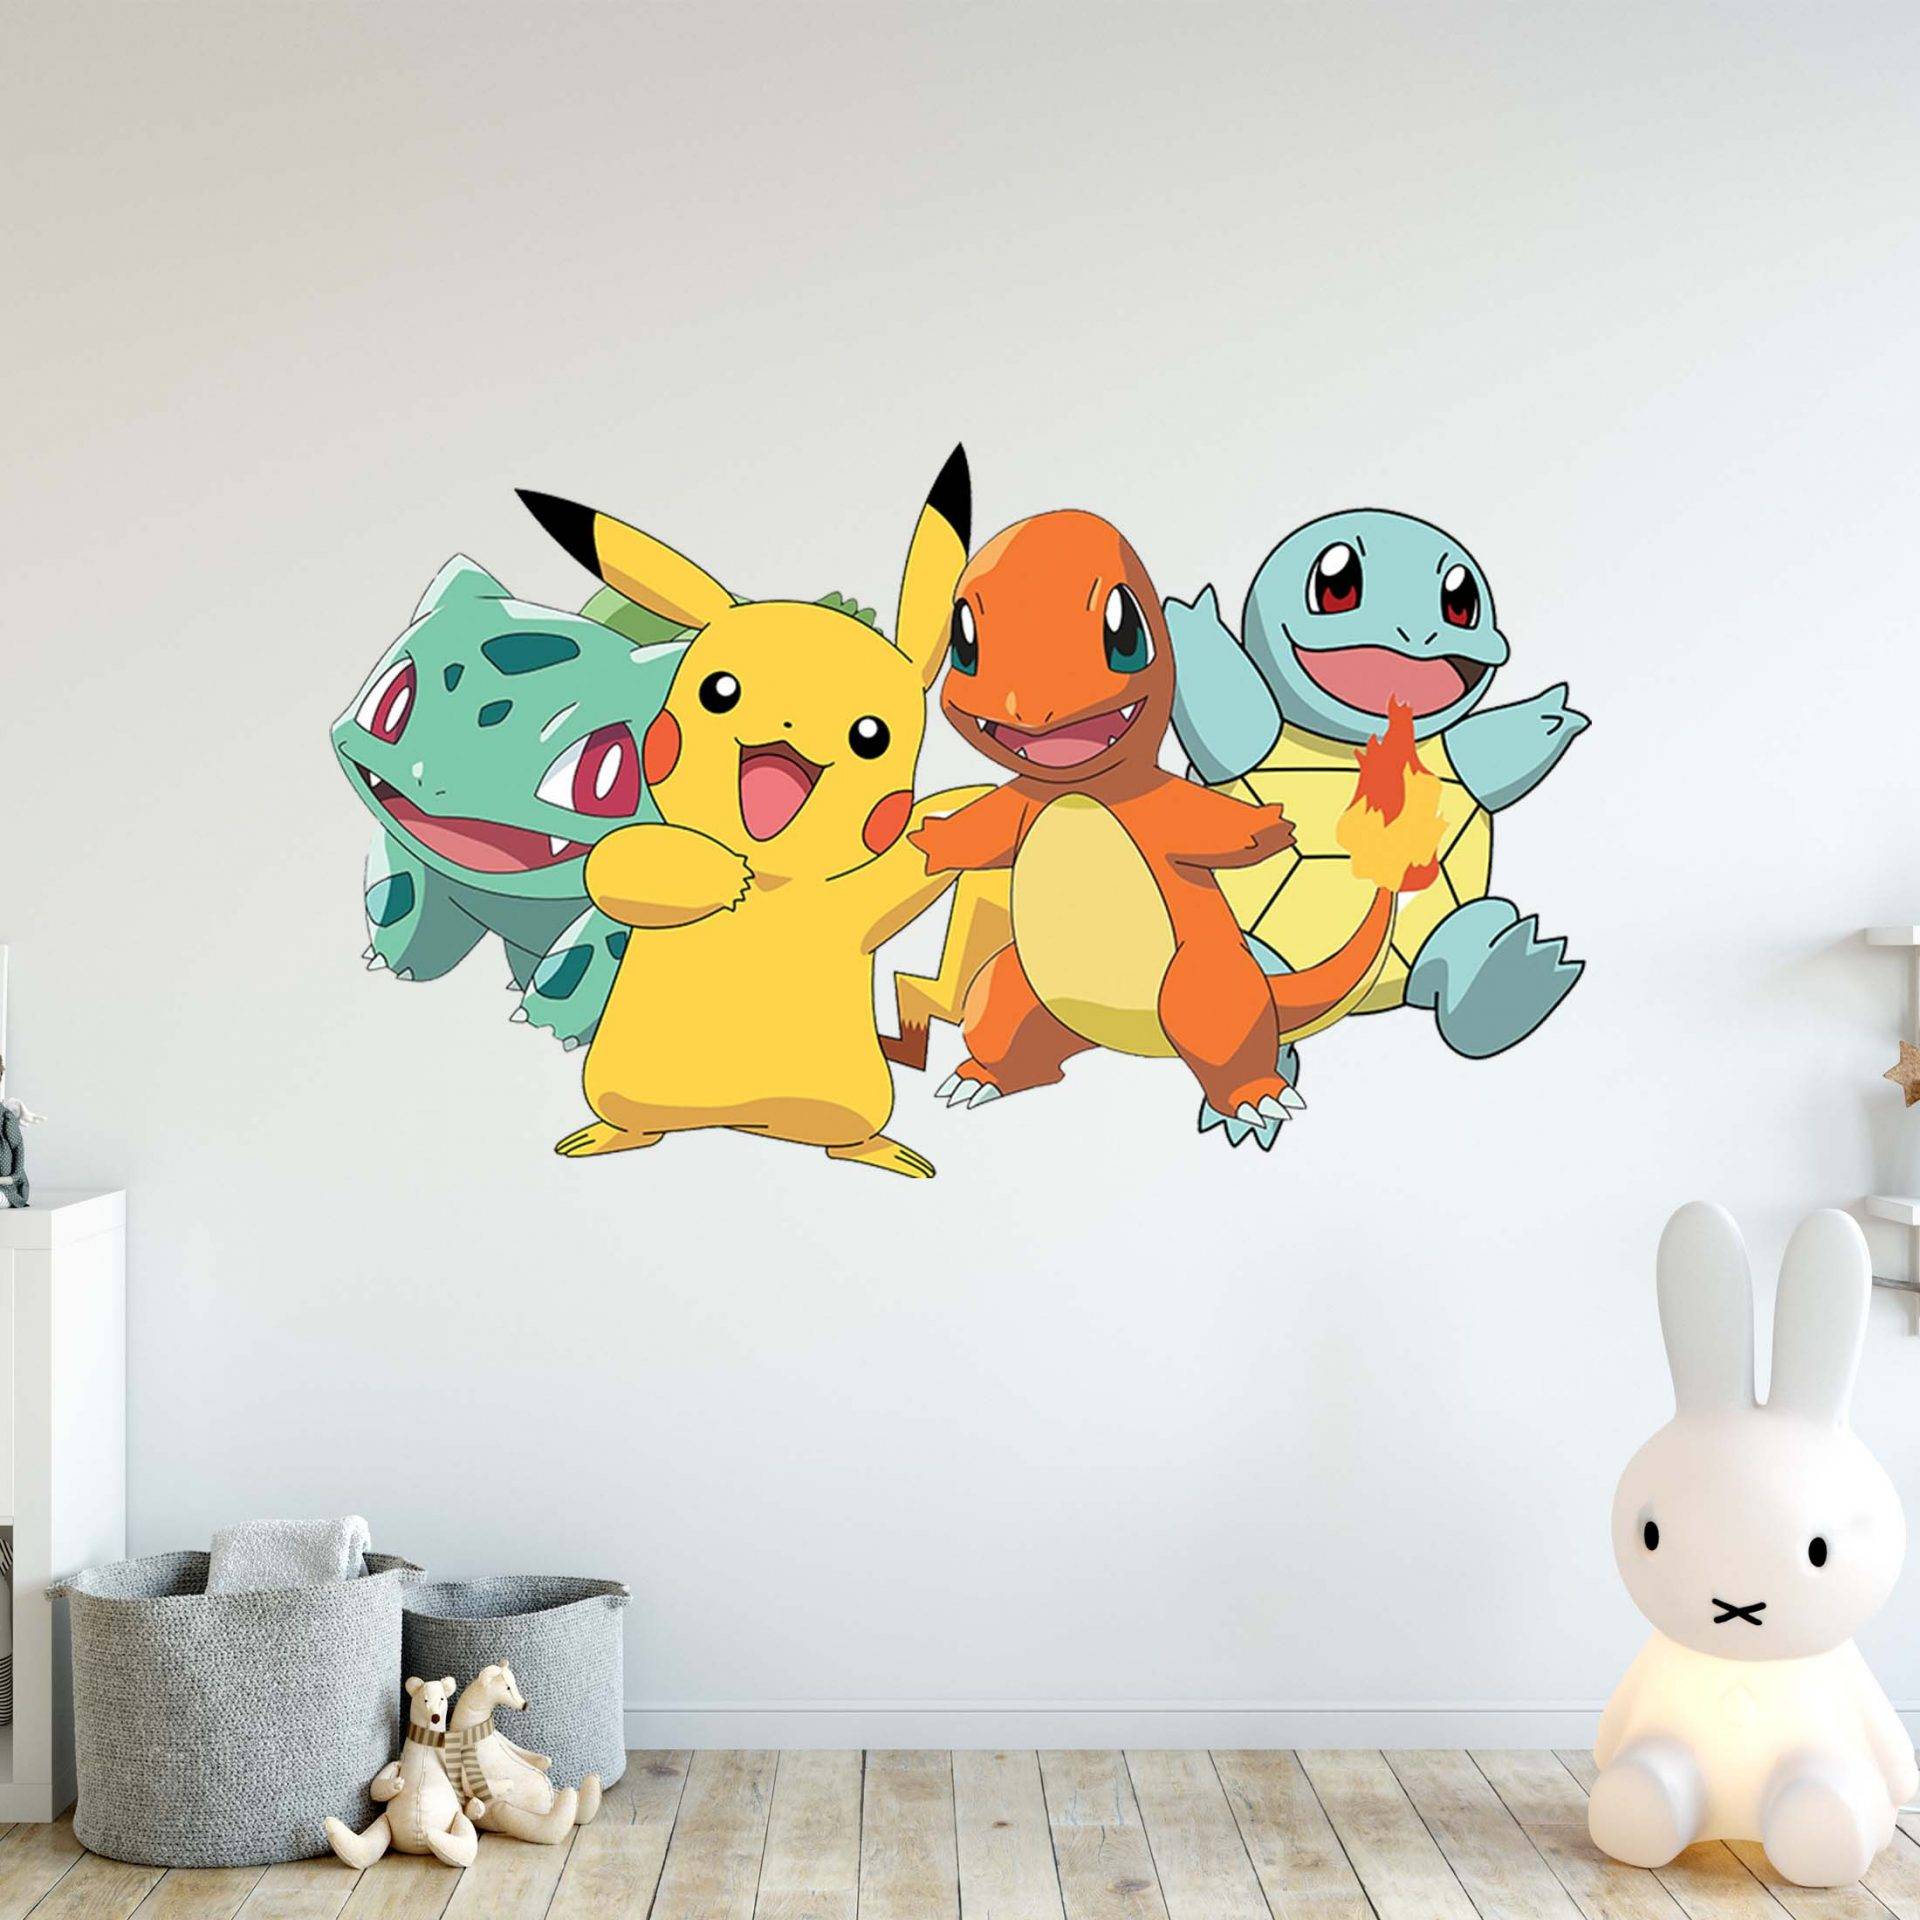 Pokemon Pikachu Wall Stickers Living Room Home Decor Art Mural UK Seller 